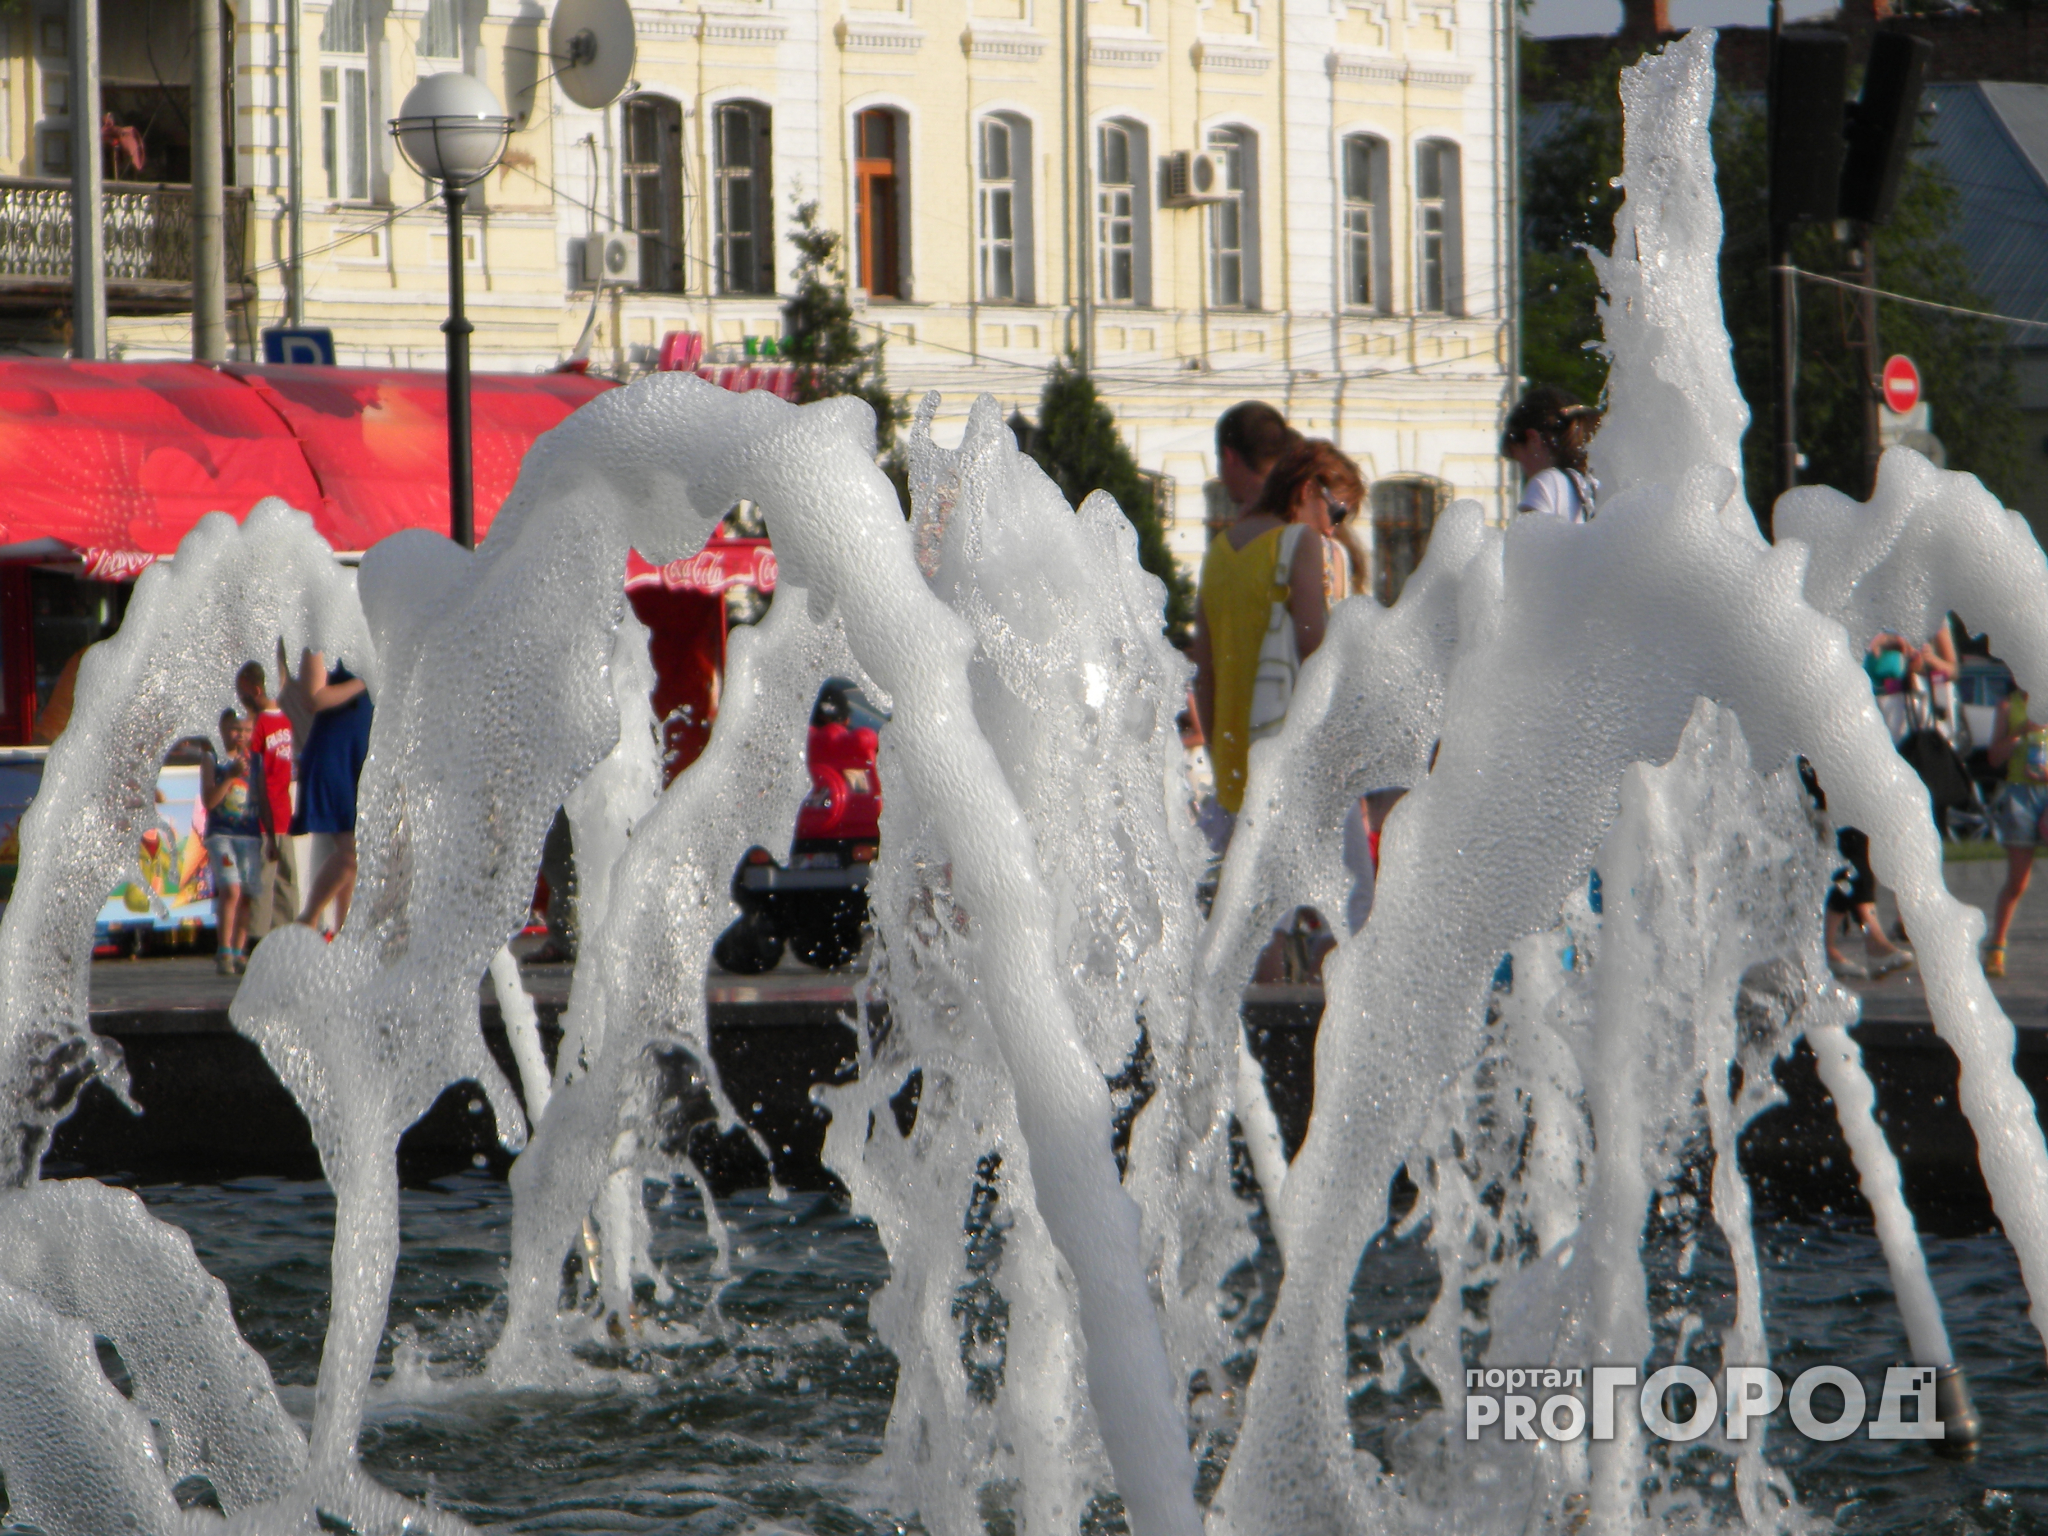 Жители Владимира не стесняясь купаются в трусах в фонтане в центре города (фото)